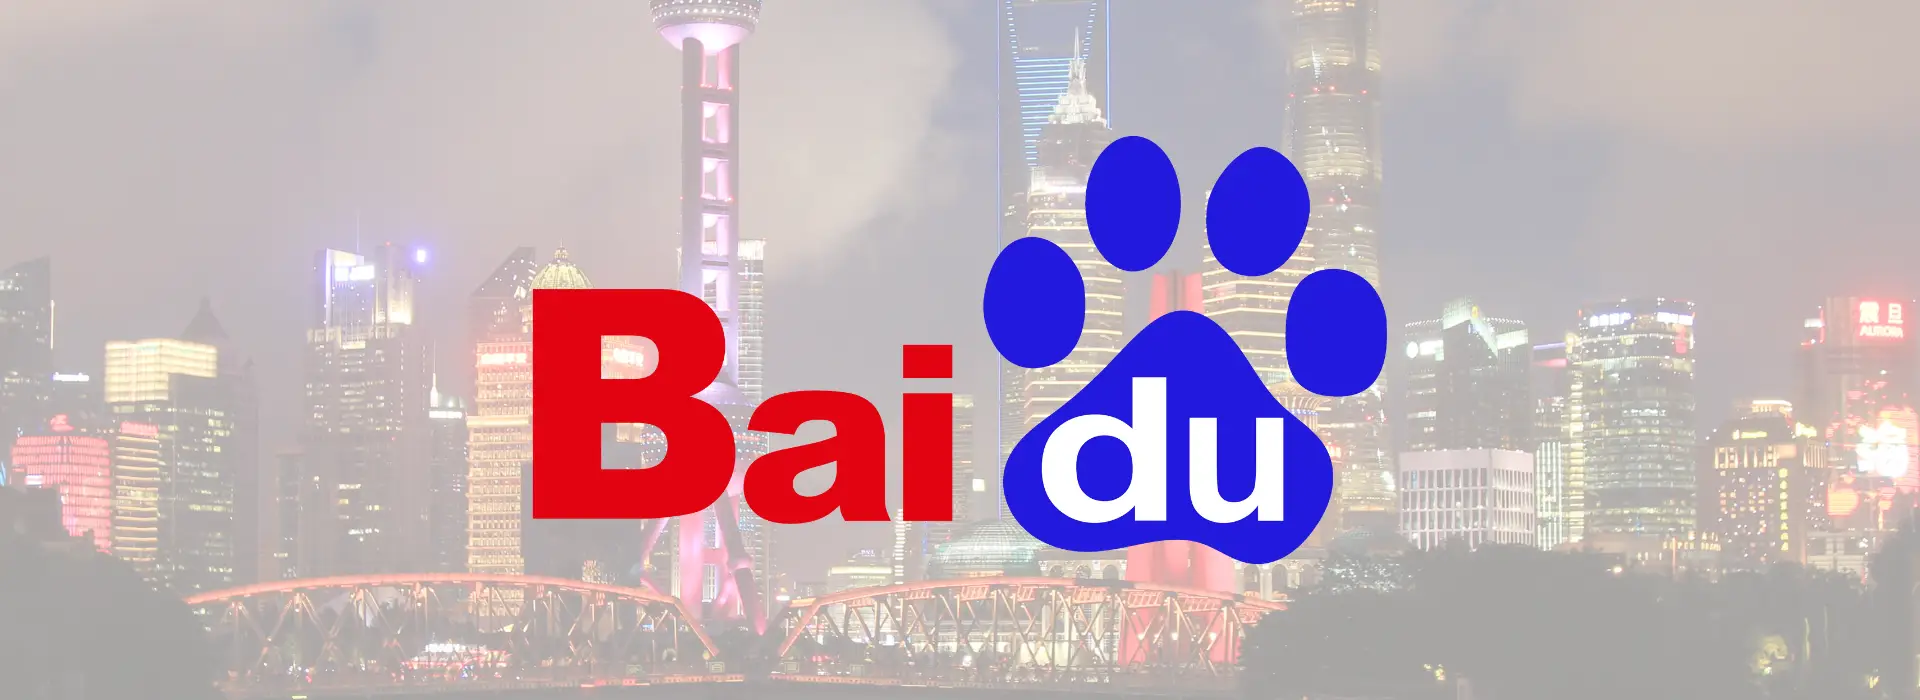 Baidu Arama Motoru Rehberi: Çin’in Lideri